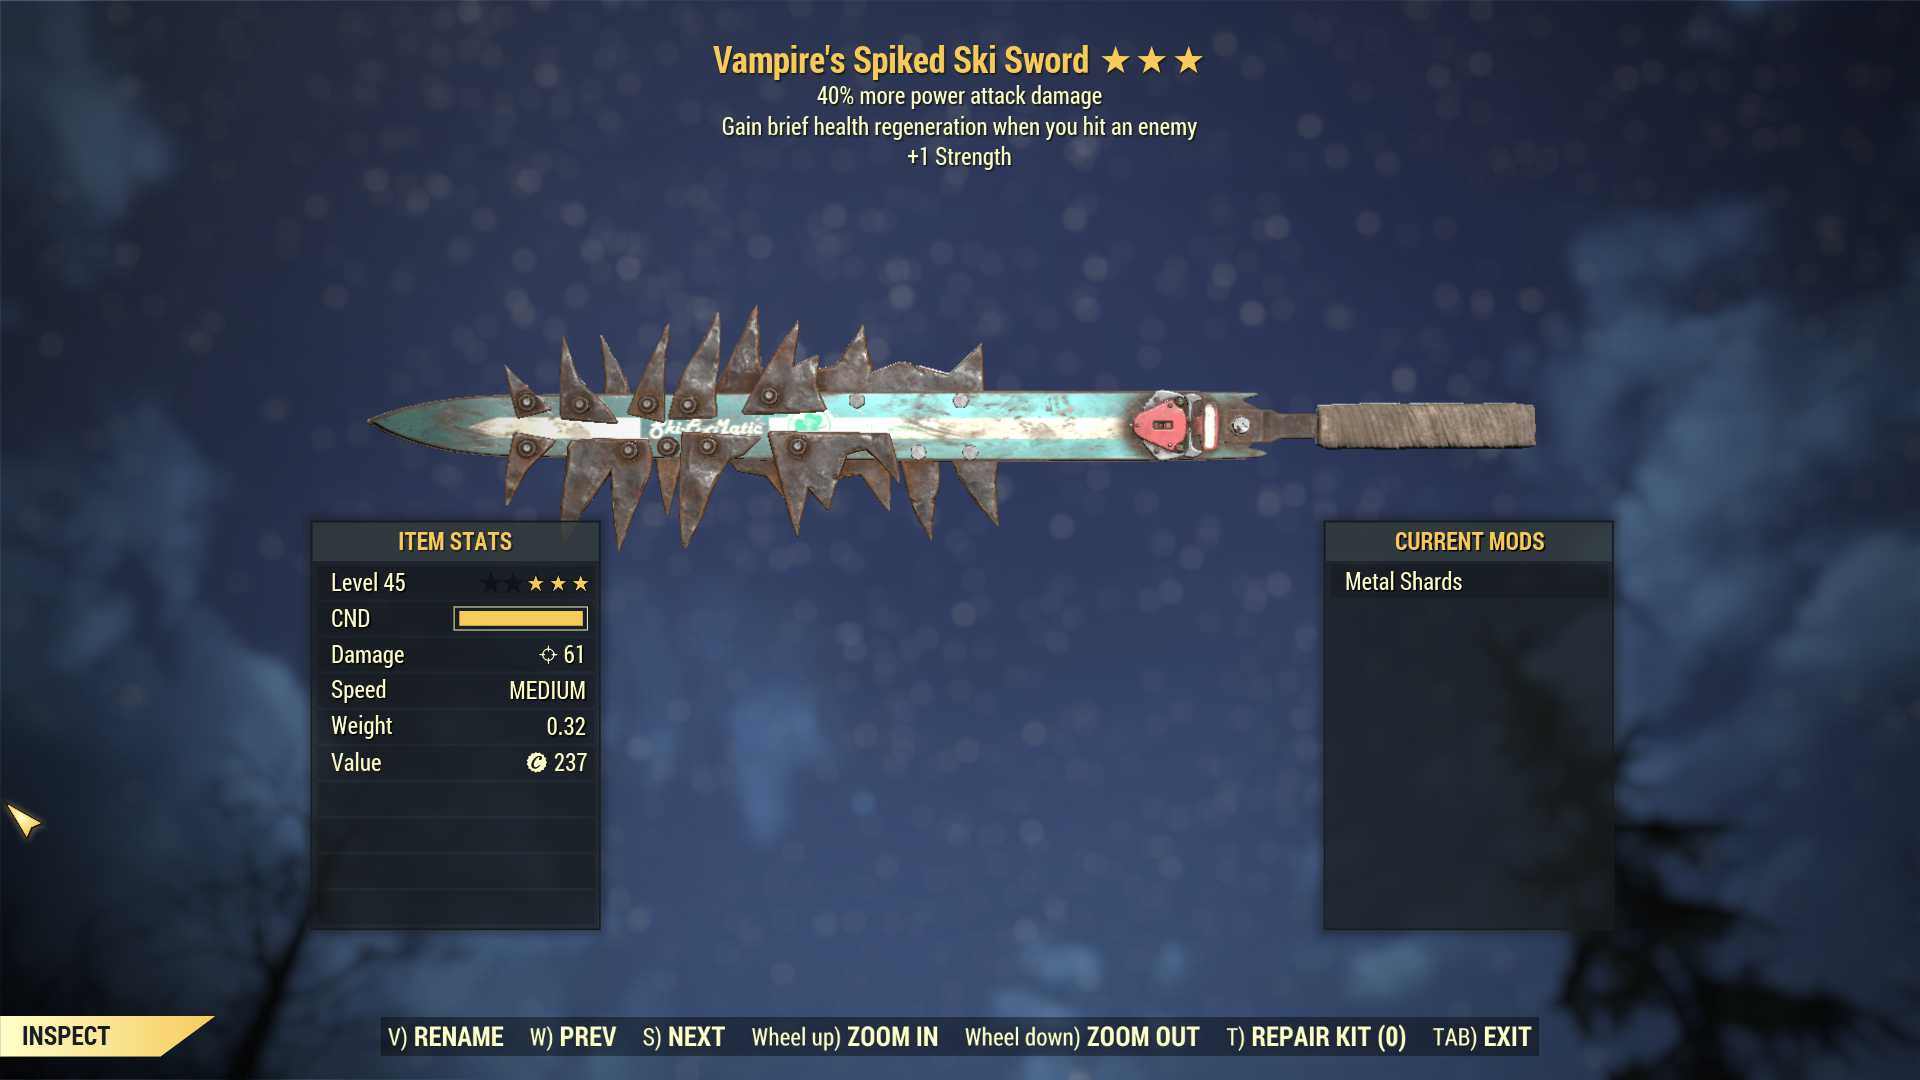 Vampire's Ski Sword (+40% damage PA, +1 Strength)